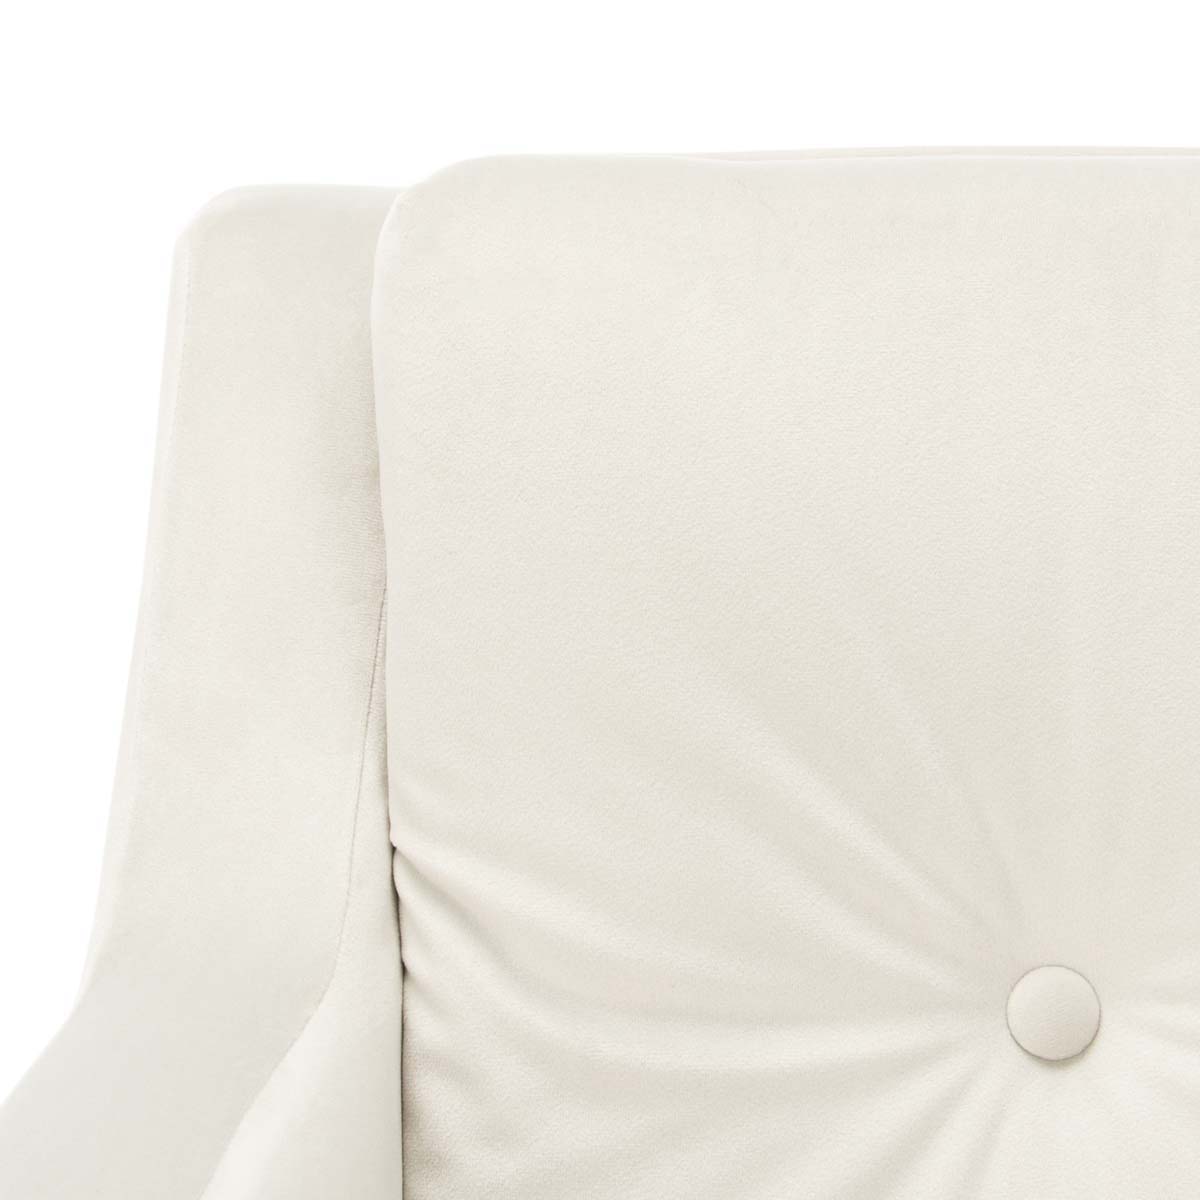 Safavieh Mara Tufted Accent Chair , ACH4505 - Silver/Gold